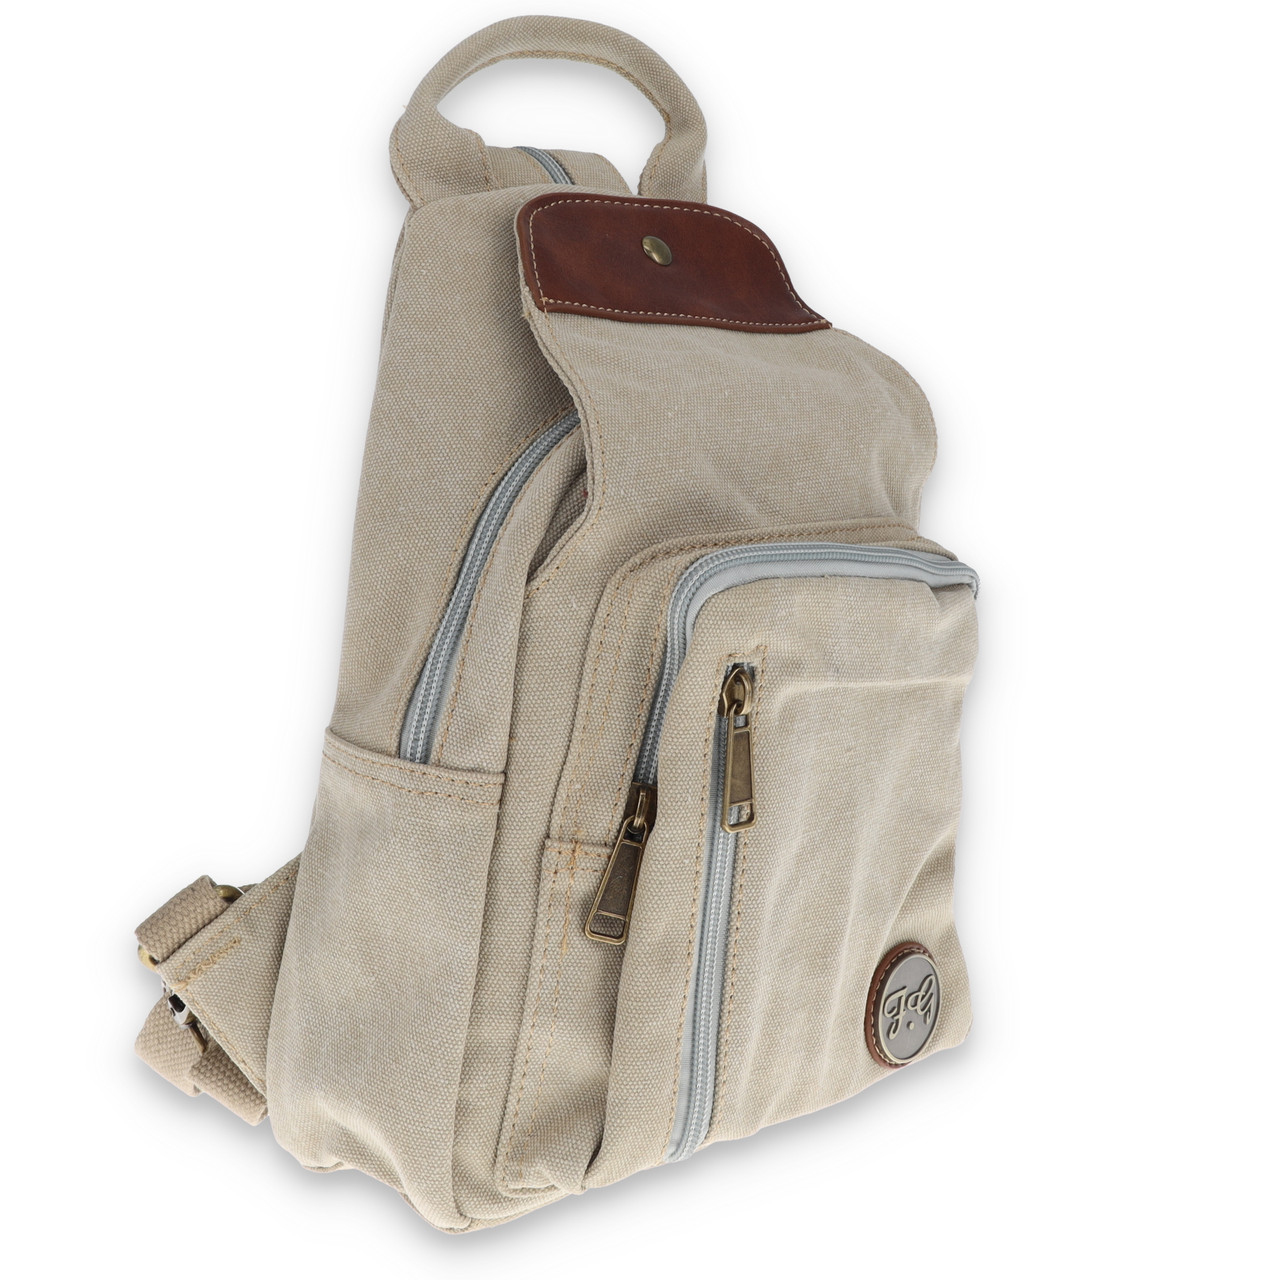 Copper Puffer Bag Mini Backpack: A Chic Statement Accessory